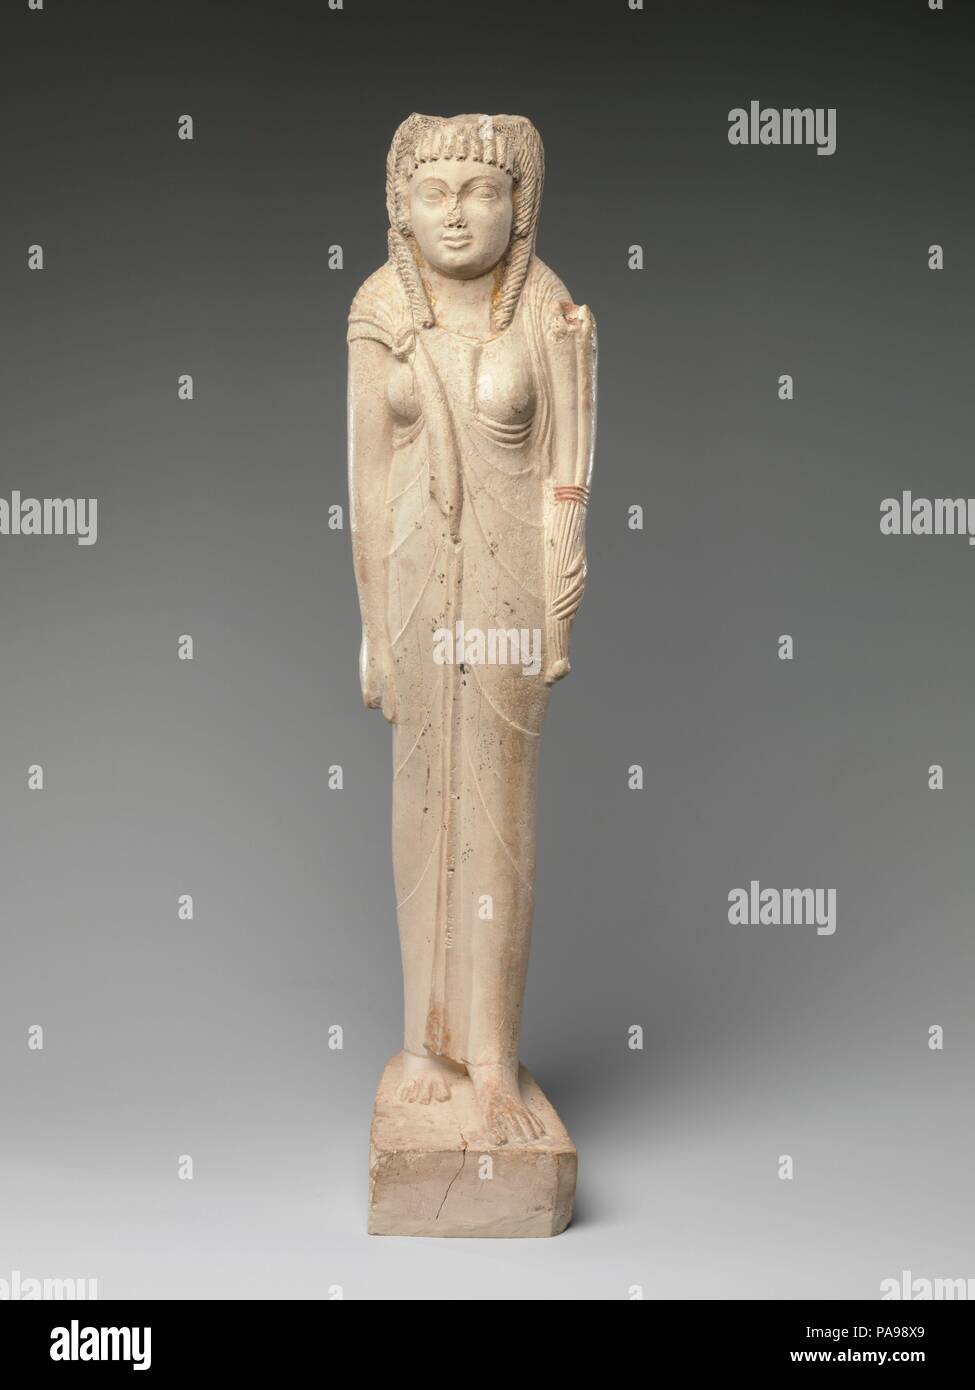 Statuette d'Arsinoé II pour son culte posthume. Dimensions : H. 38,7 cm (15 1/4 po) ; W. 9,6 cm (3 3/4 po) ; D. 13.2 cm (5 3/16 po). Date : ca. 150-100 av. J.-C.. L'inscription à l'arrière de ce chiffre fait référence à la Reine Arsinoé II comme une déesse, indiquant qu'il a été fait après 270 avant JC quand son culte a été établi au moment de sa mort par son frère et mari Ptolémée II. La dorure indiquant la divinité une fois couvert son visage, et des traces subsistent sur les bords de son encolure. Bien que la pose frontale et la disposition des membres de cette petite statue égyptienne suit des traditions, le cor Banque D'Images